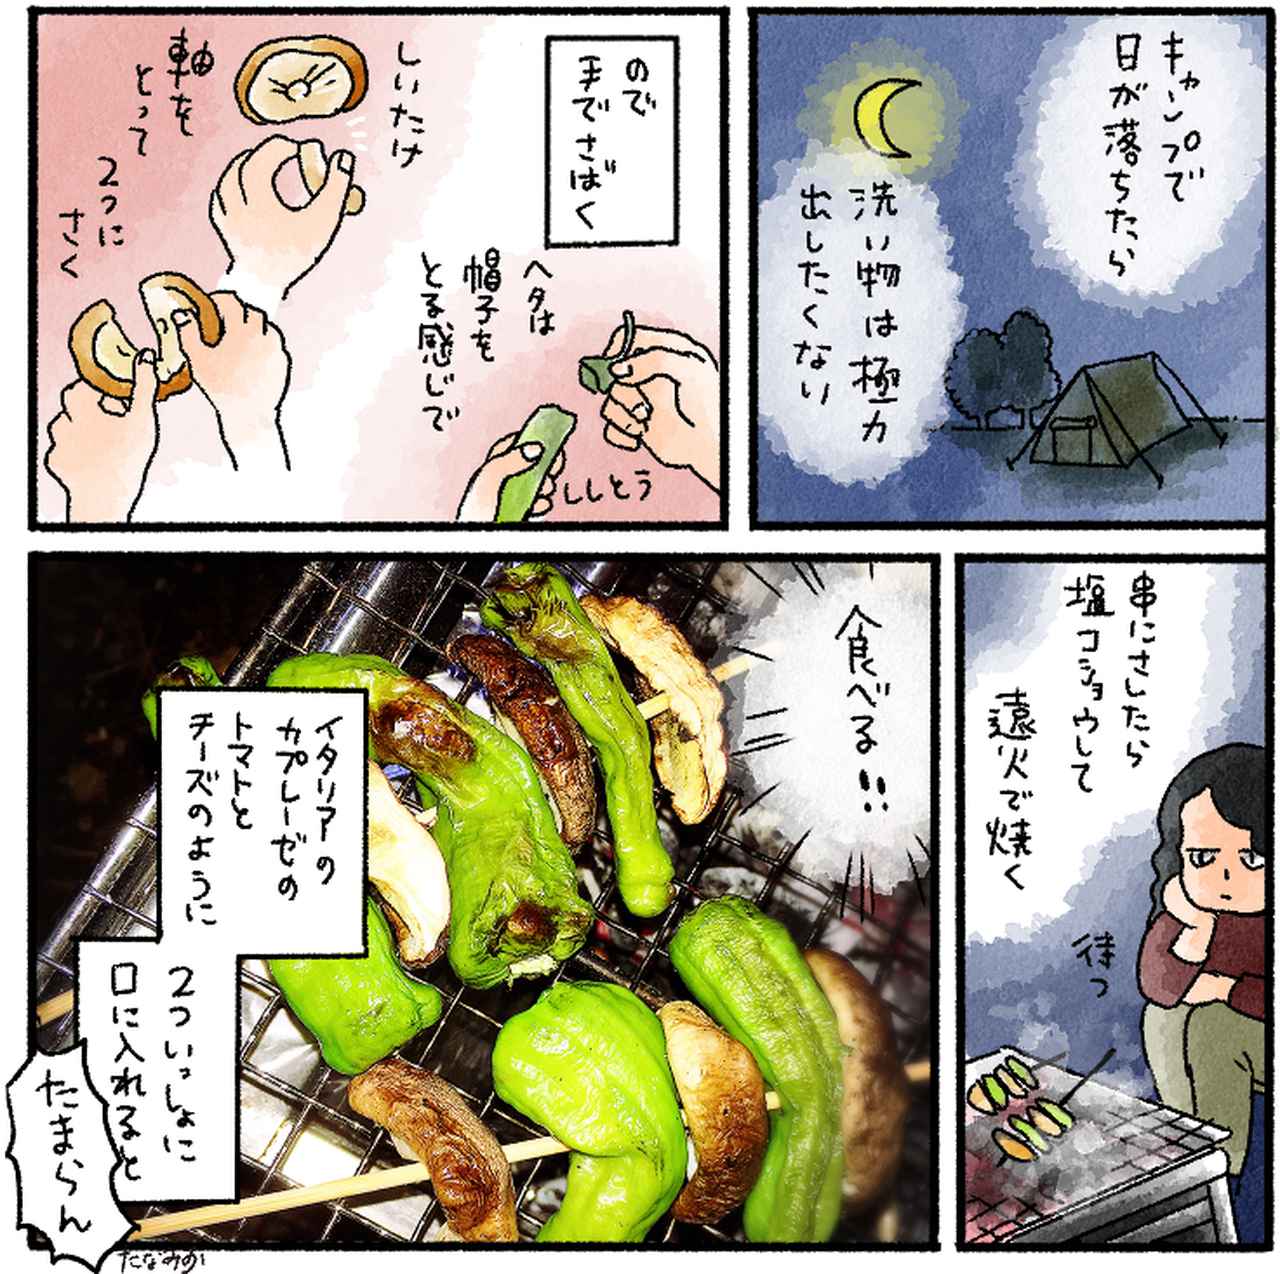 夏野菜レシピ 栄養たっぷり ししとうの食べ方4選 簡単キャンプ飯 おつまみにも お役立ちキャンプ情報 2020年07月20日 日本気象協会 Tenki Jp